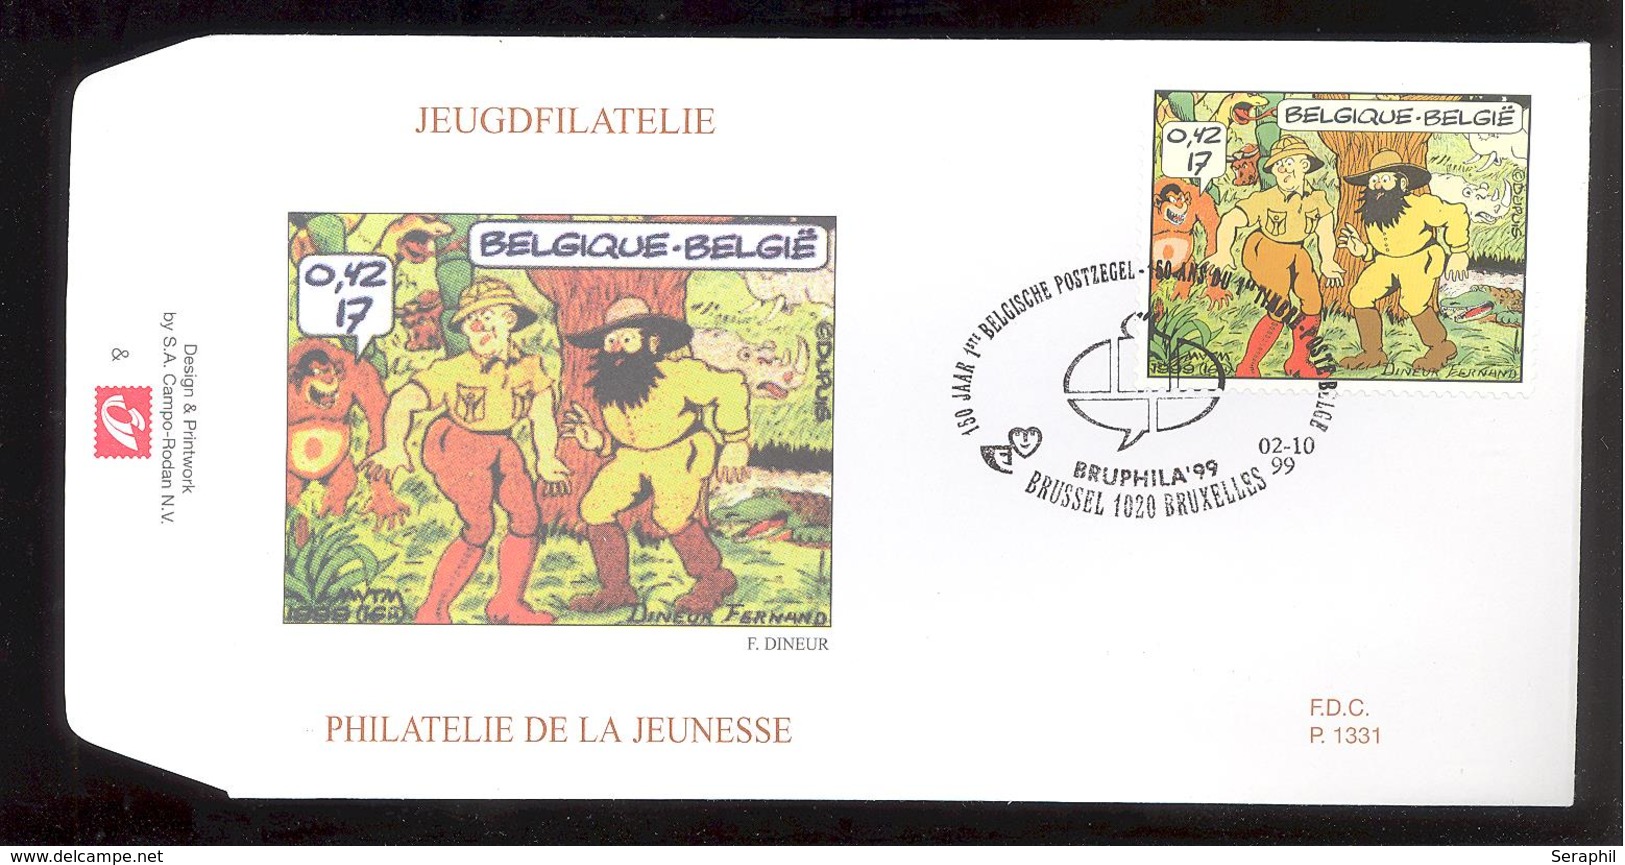 FDC - 9 B.D. Différentes - Philatélie de la Jeunesse -  Timbres n° 2841/49- Tampon Brussel /Bruxelles Ovale bulle Tintin